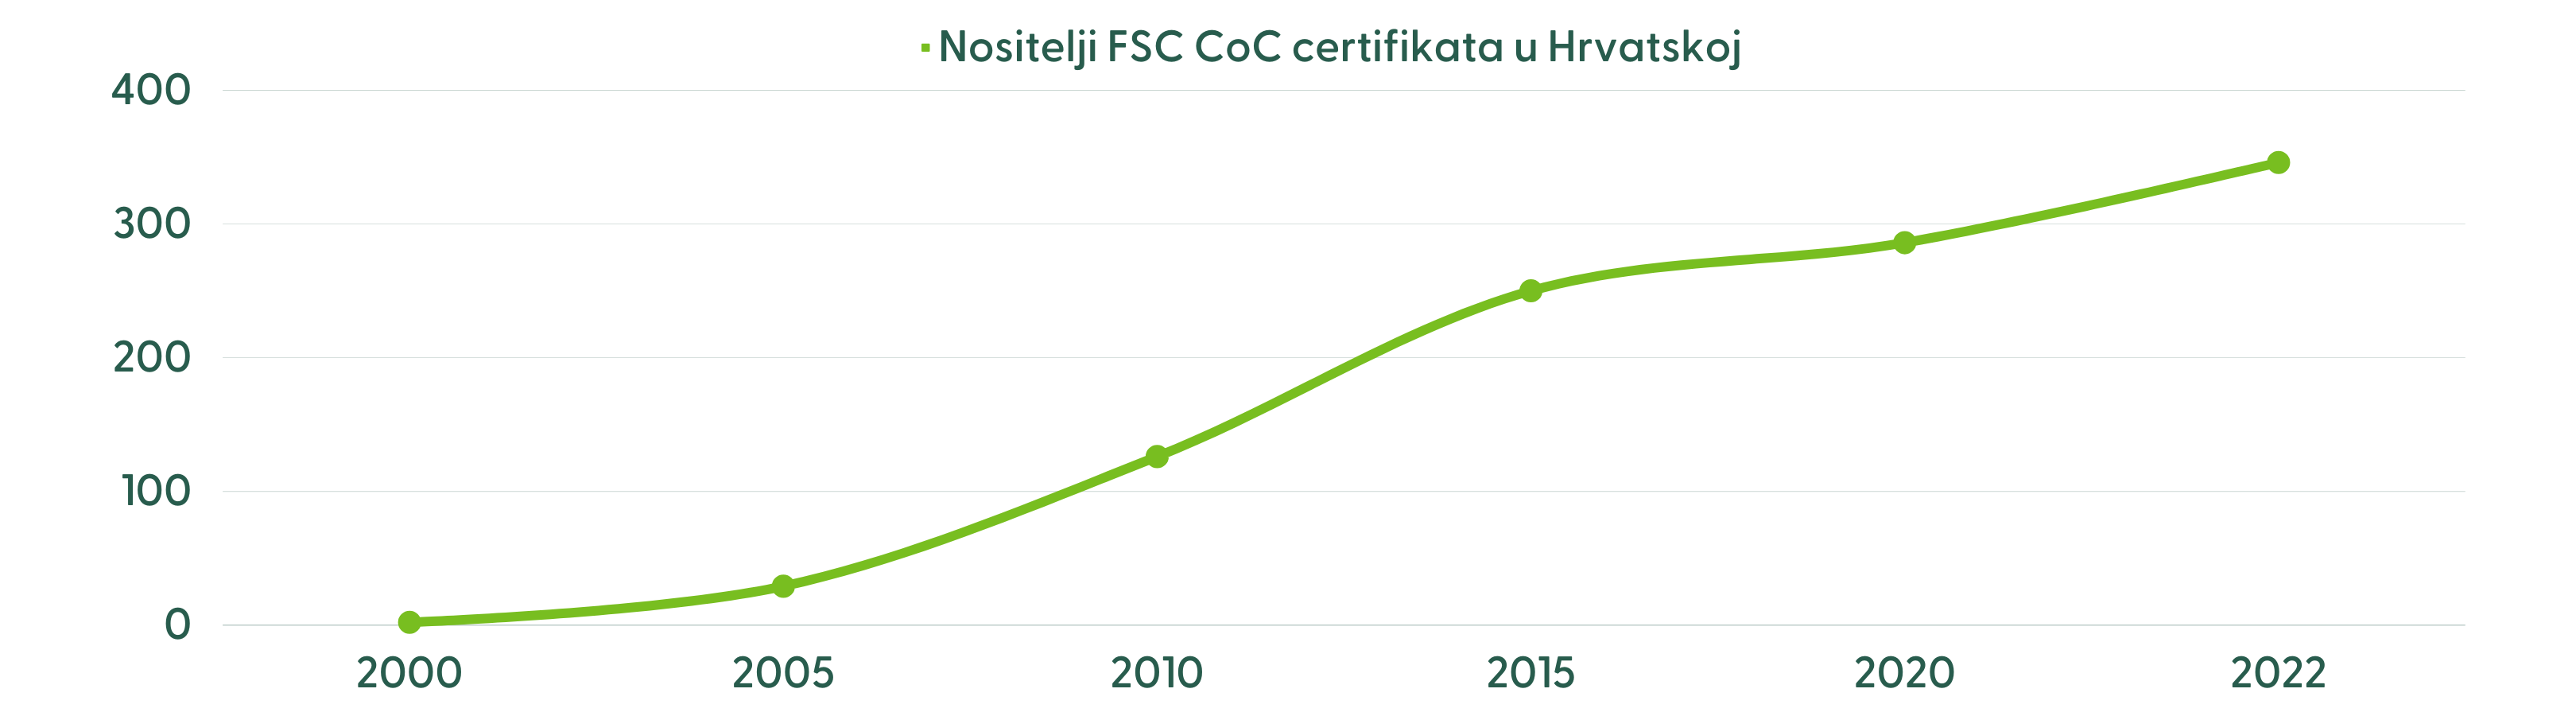 FSC CoC Croatia growth